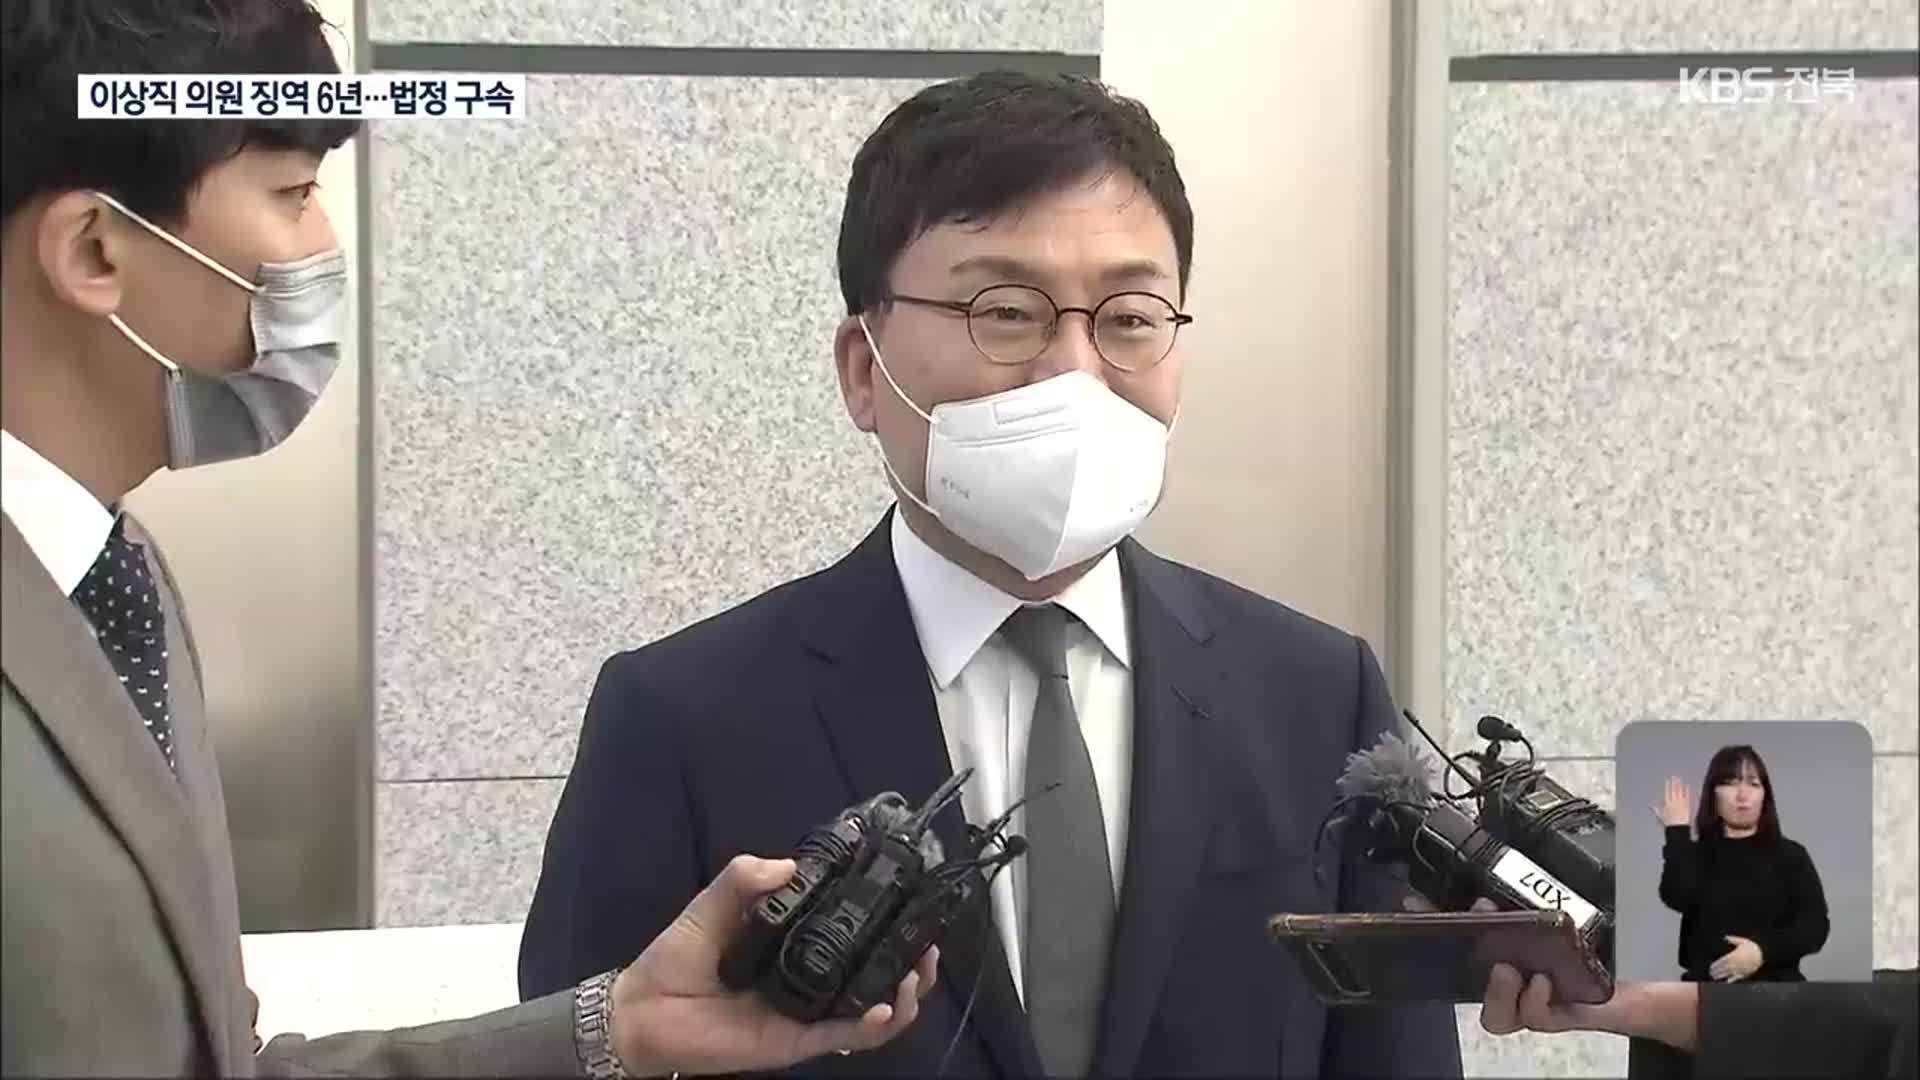 “이스타 배임·횡령” 이상직 1심서 징역 6년…법정 구속